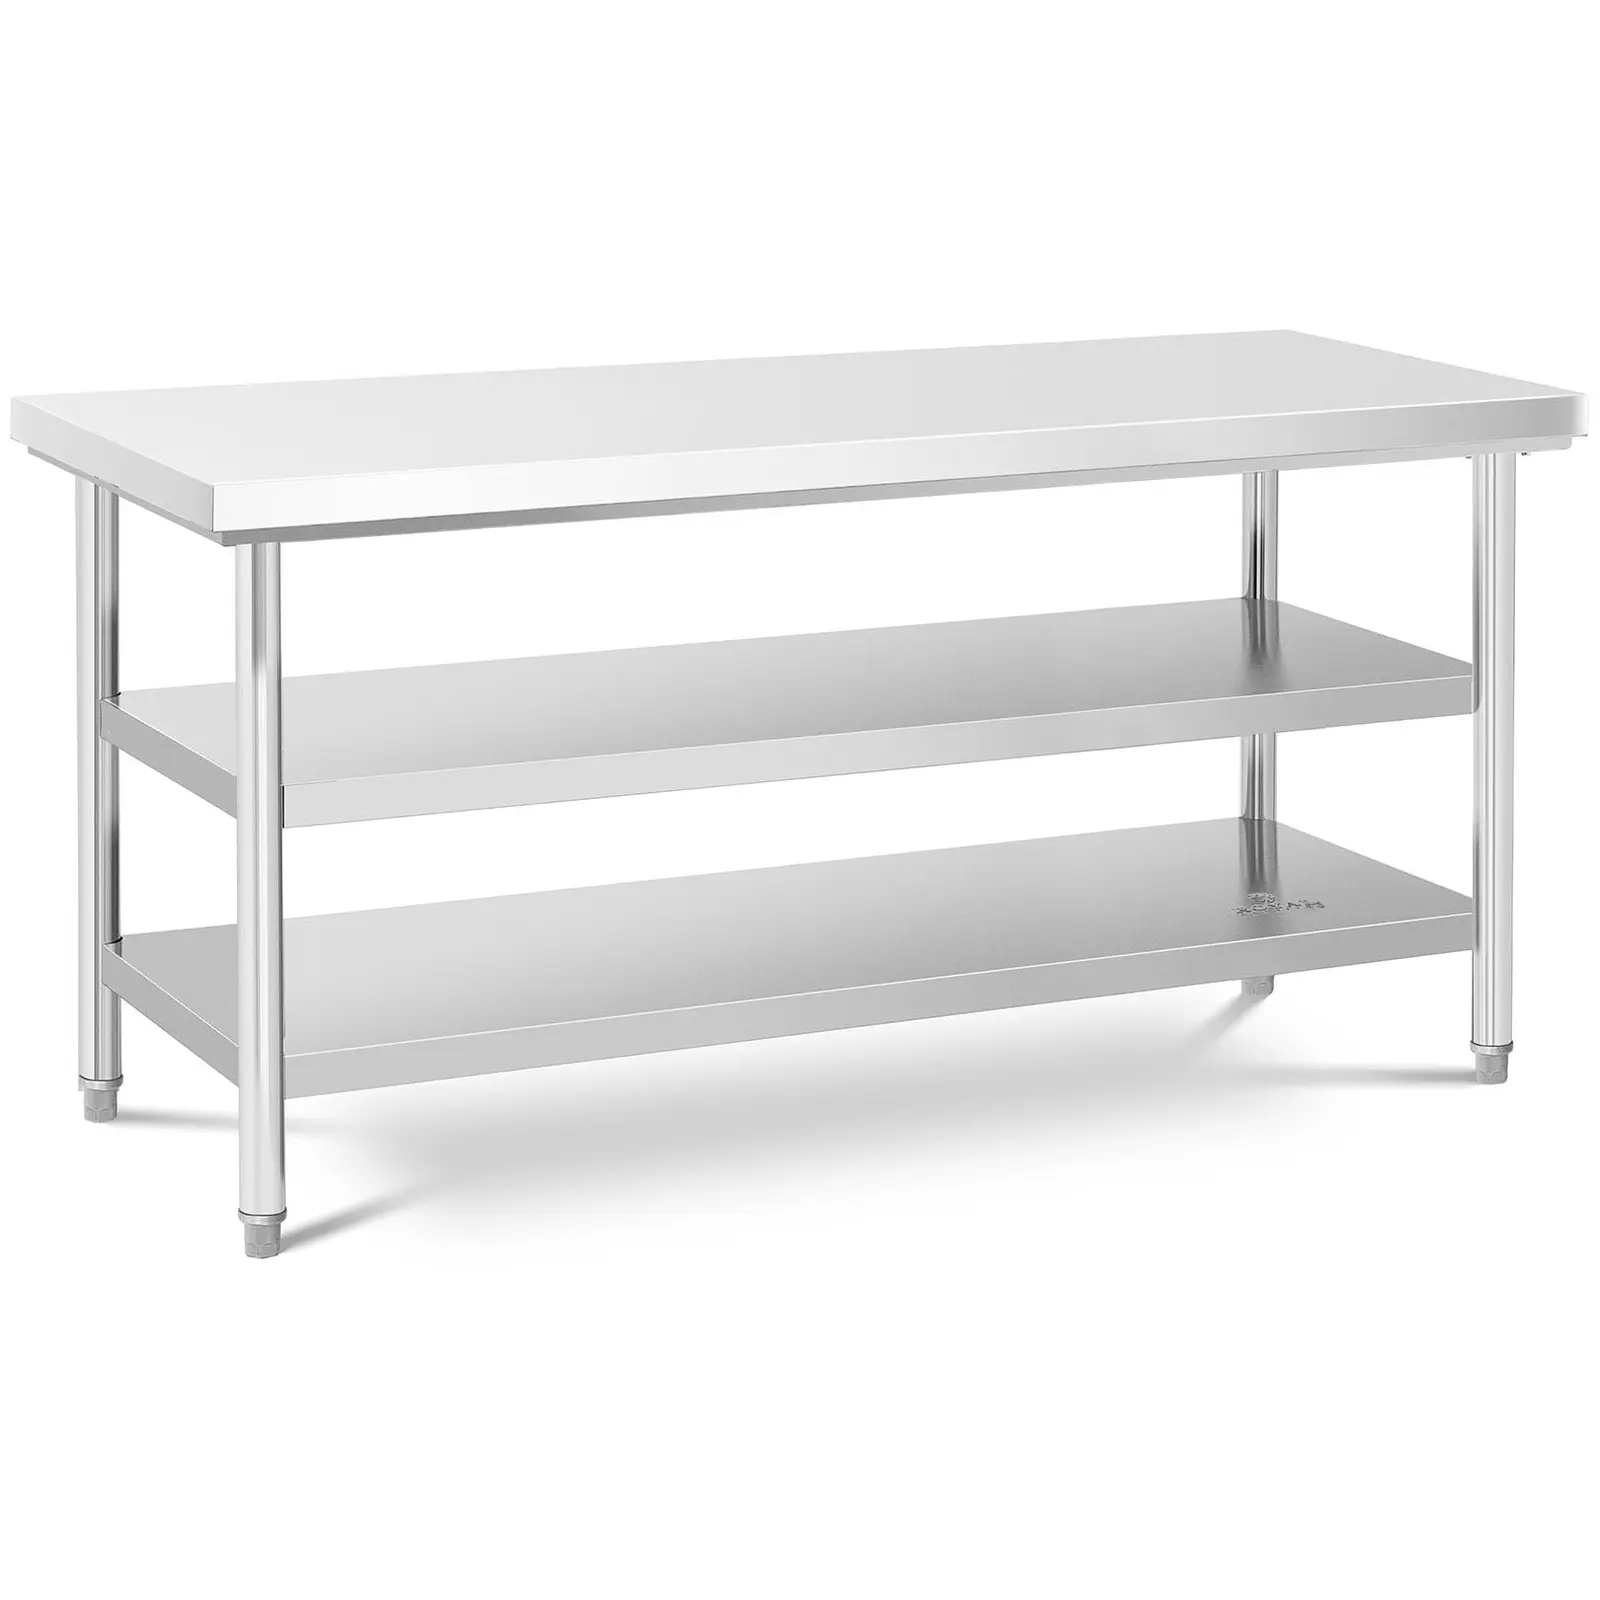 Stôl z nehrdzavejúcej ocele - 70 x 180 cm - 600 kg - 3 úrovne